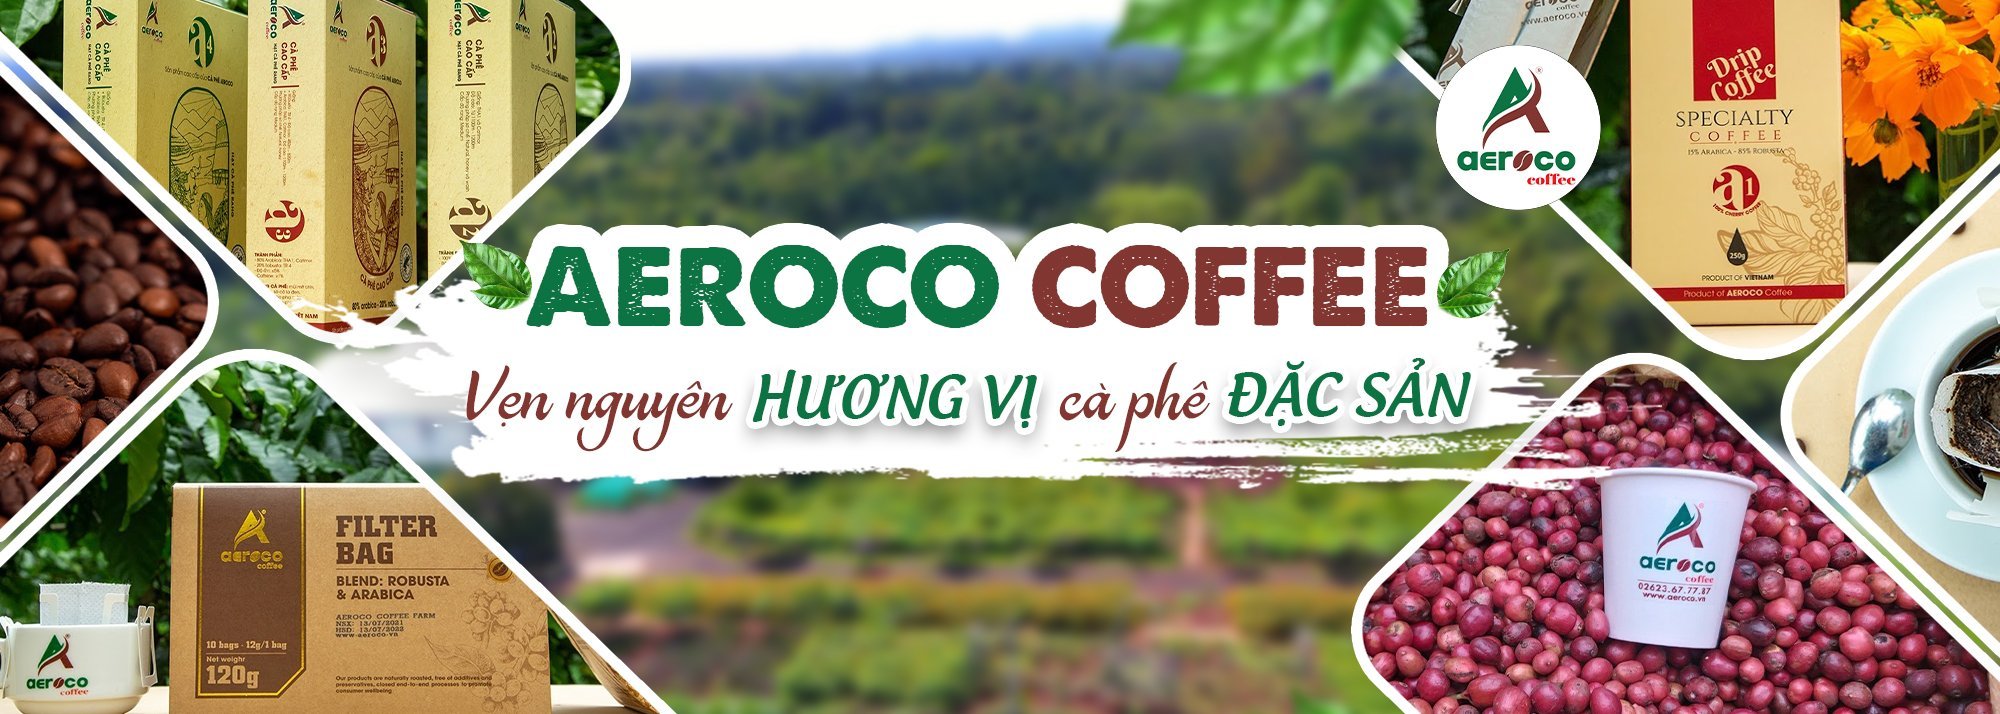 Giữ vững và lan tỏa giá trị cà phê đặc sản  từ vùng nguyên liệu Đắk Lắk